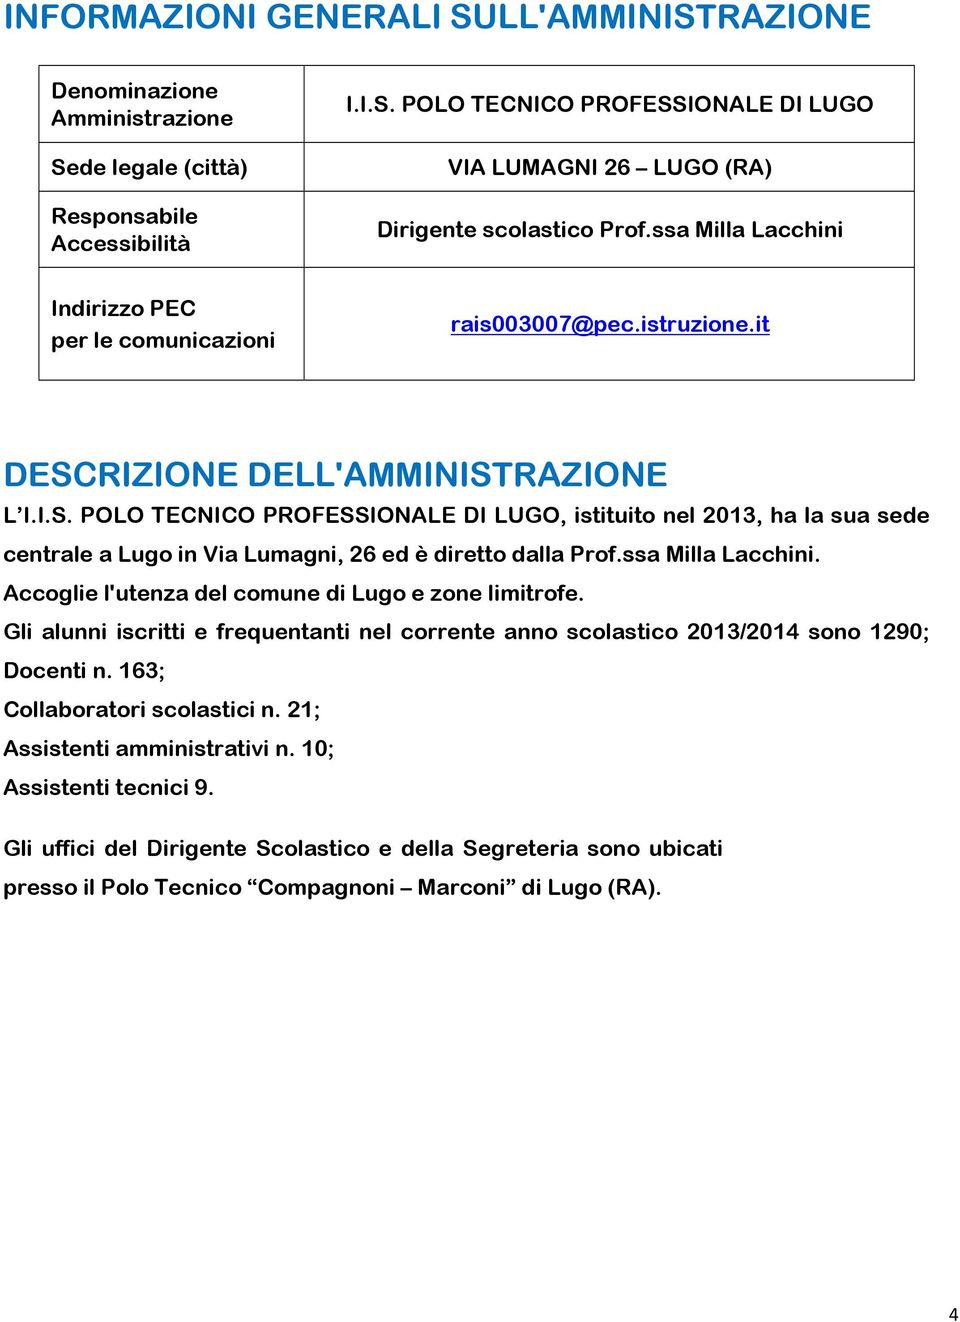 RIZIONE DELL'AMMINISTRAZIONE L I.I.S. POLO TECNICO PROFESSIONALE DI LUGO, istituito nel 2013, ha la sua sede centrale a Lugo in Via Lumagni, 26 ed è diretto dalla Prof.ssa Milla Lacchini.